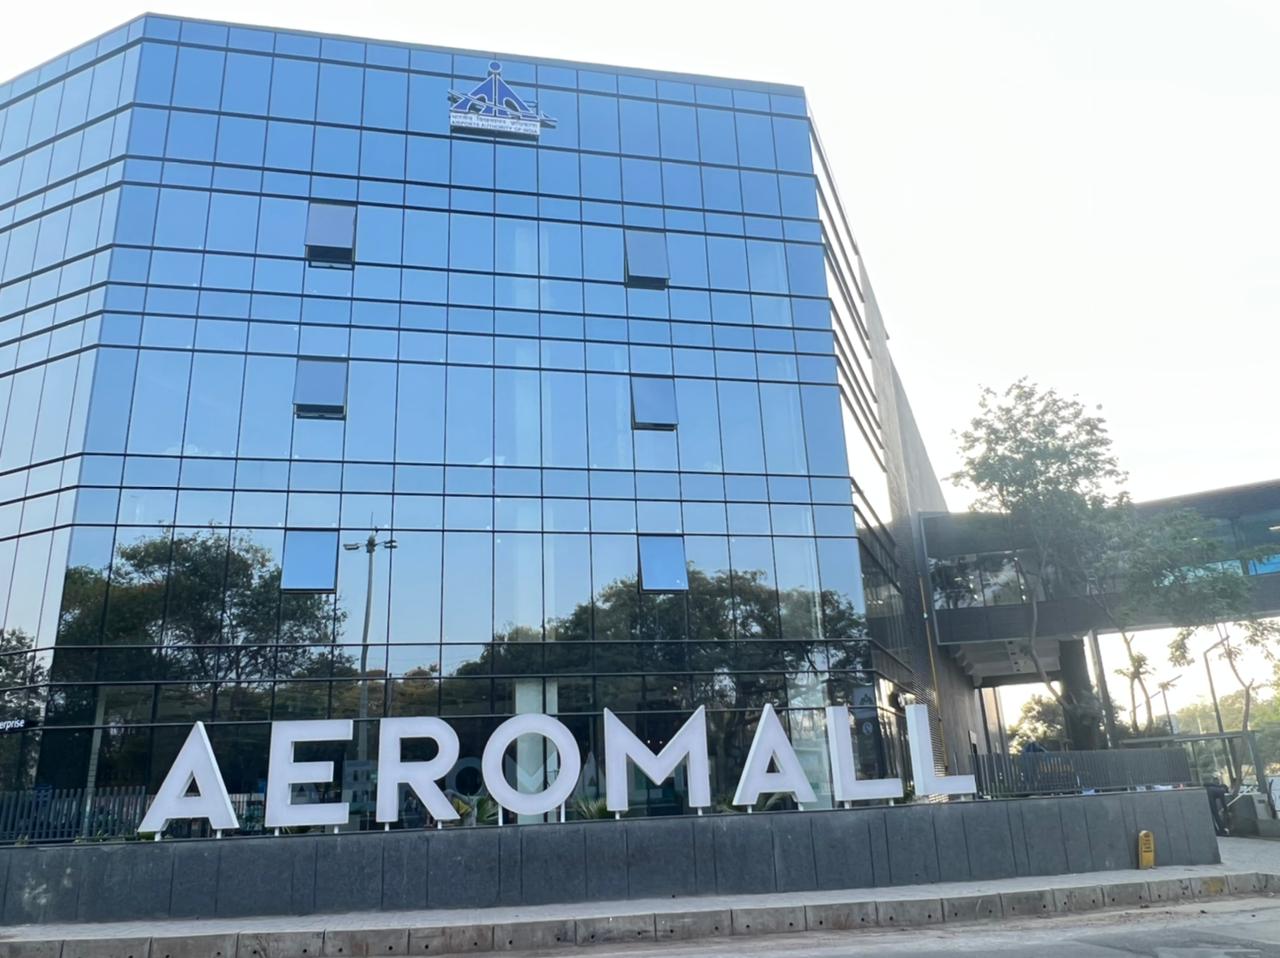 Aeromall | वाहतूक नियोजनाबाबत आदर्श ठरणाऱ्या मल्टीलेवल पार्किंग (एरोमॉलचे ) आज  उद्घाटन  | केंद्रीय हवाई वाहतूक मंत्री ज्योतीरादित्य शिंदे  यांच्या हस्ते होणार उदघाटन